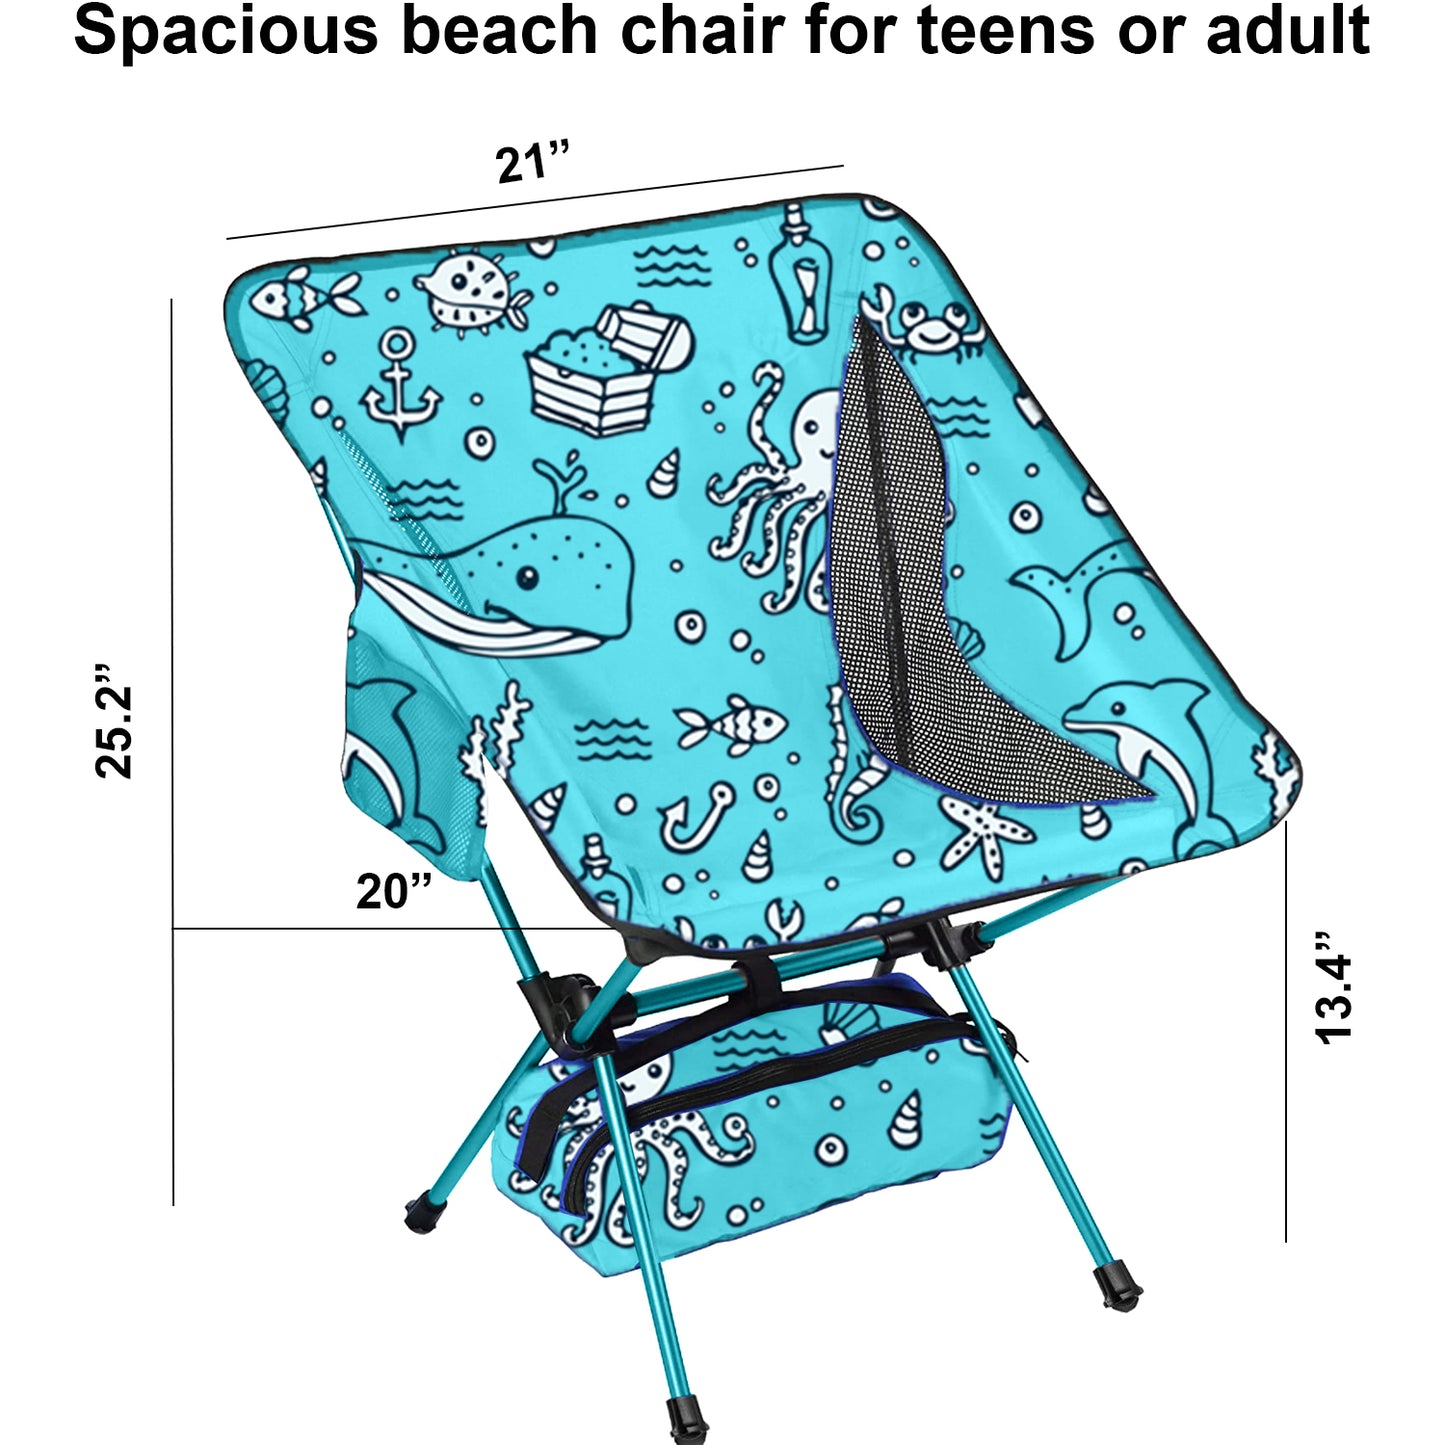 Youth beach chair - Ocean World theme